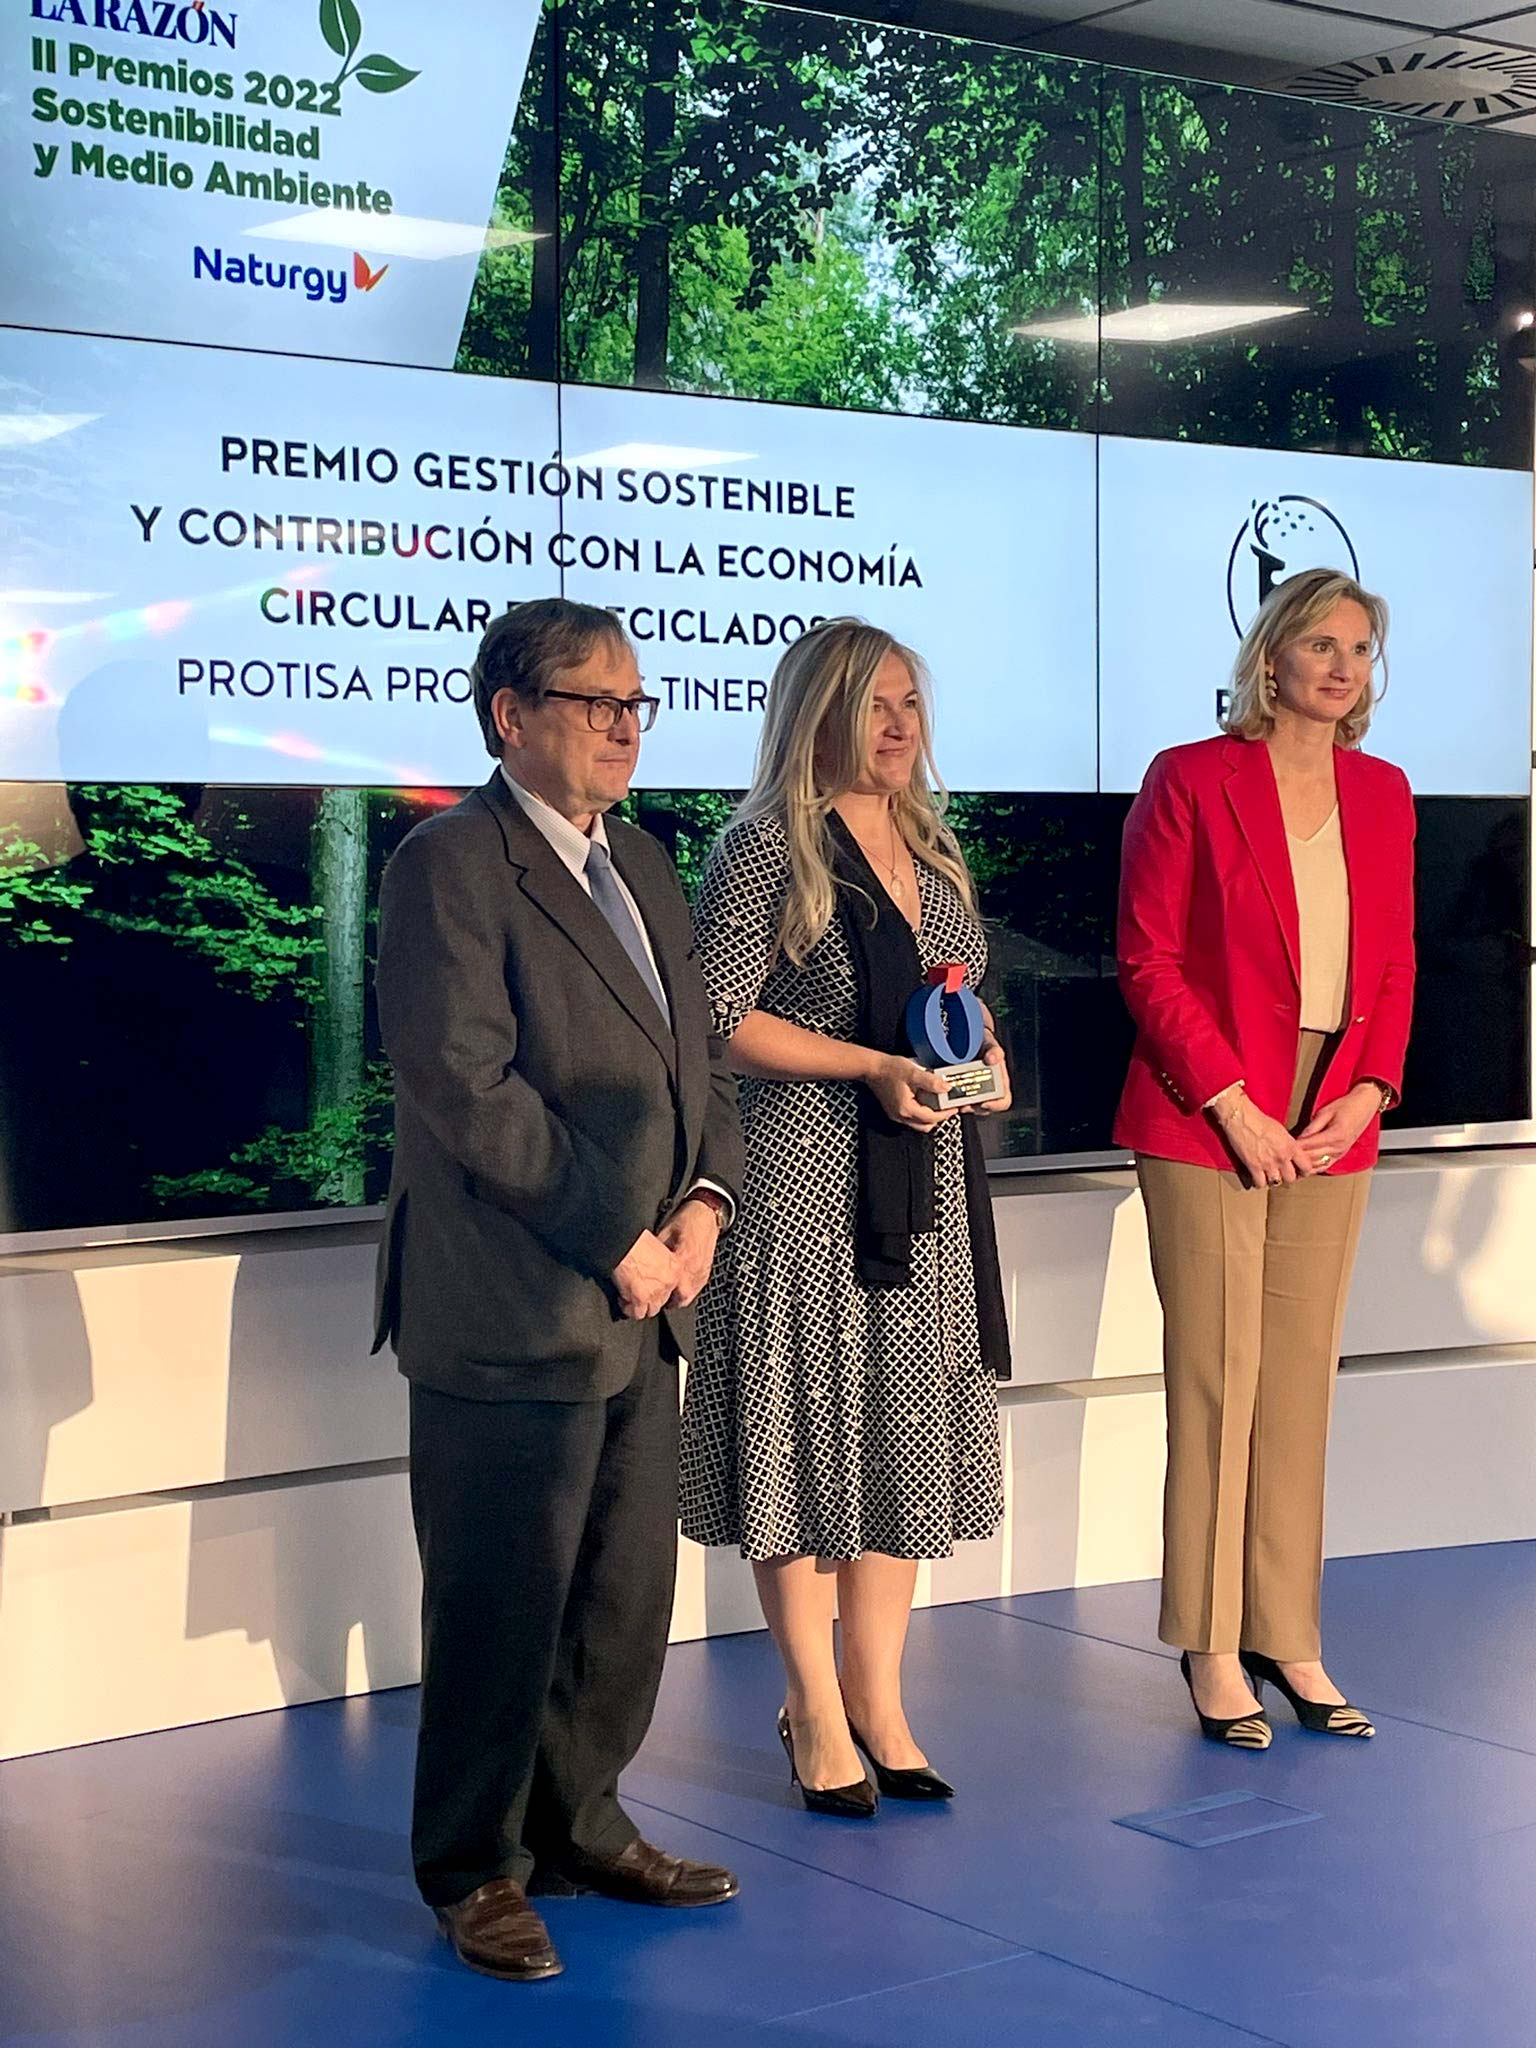 PROTISA premiada en los II Premios Sostenibilidad y Medio Ambiente de La Razón